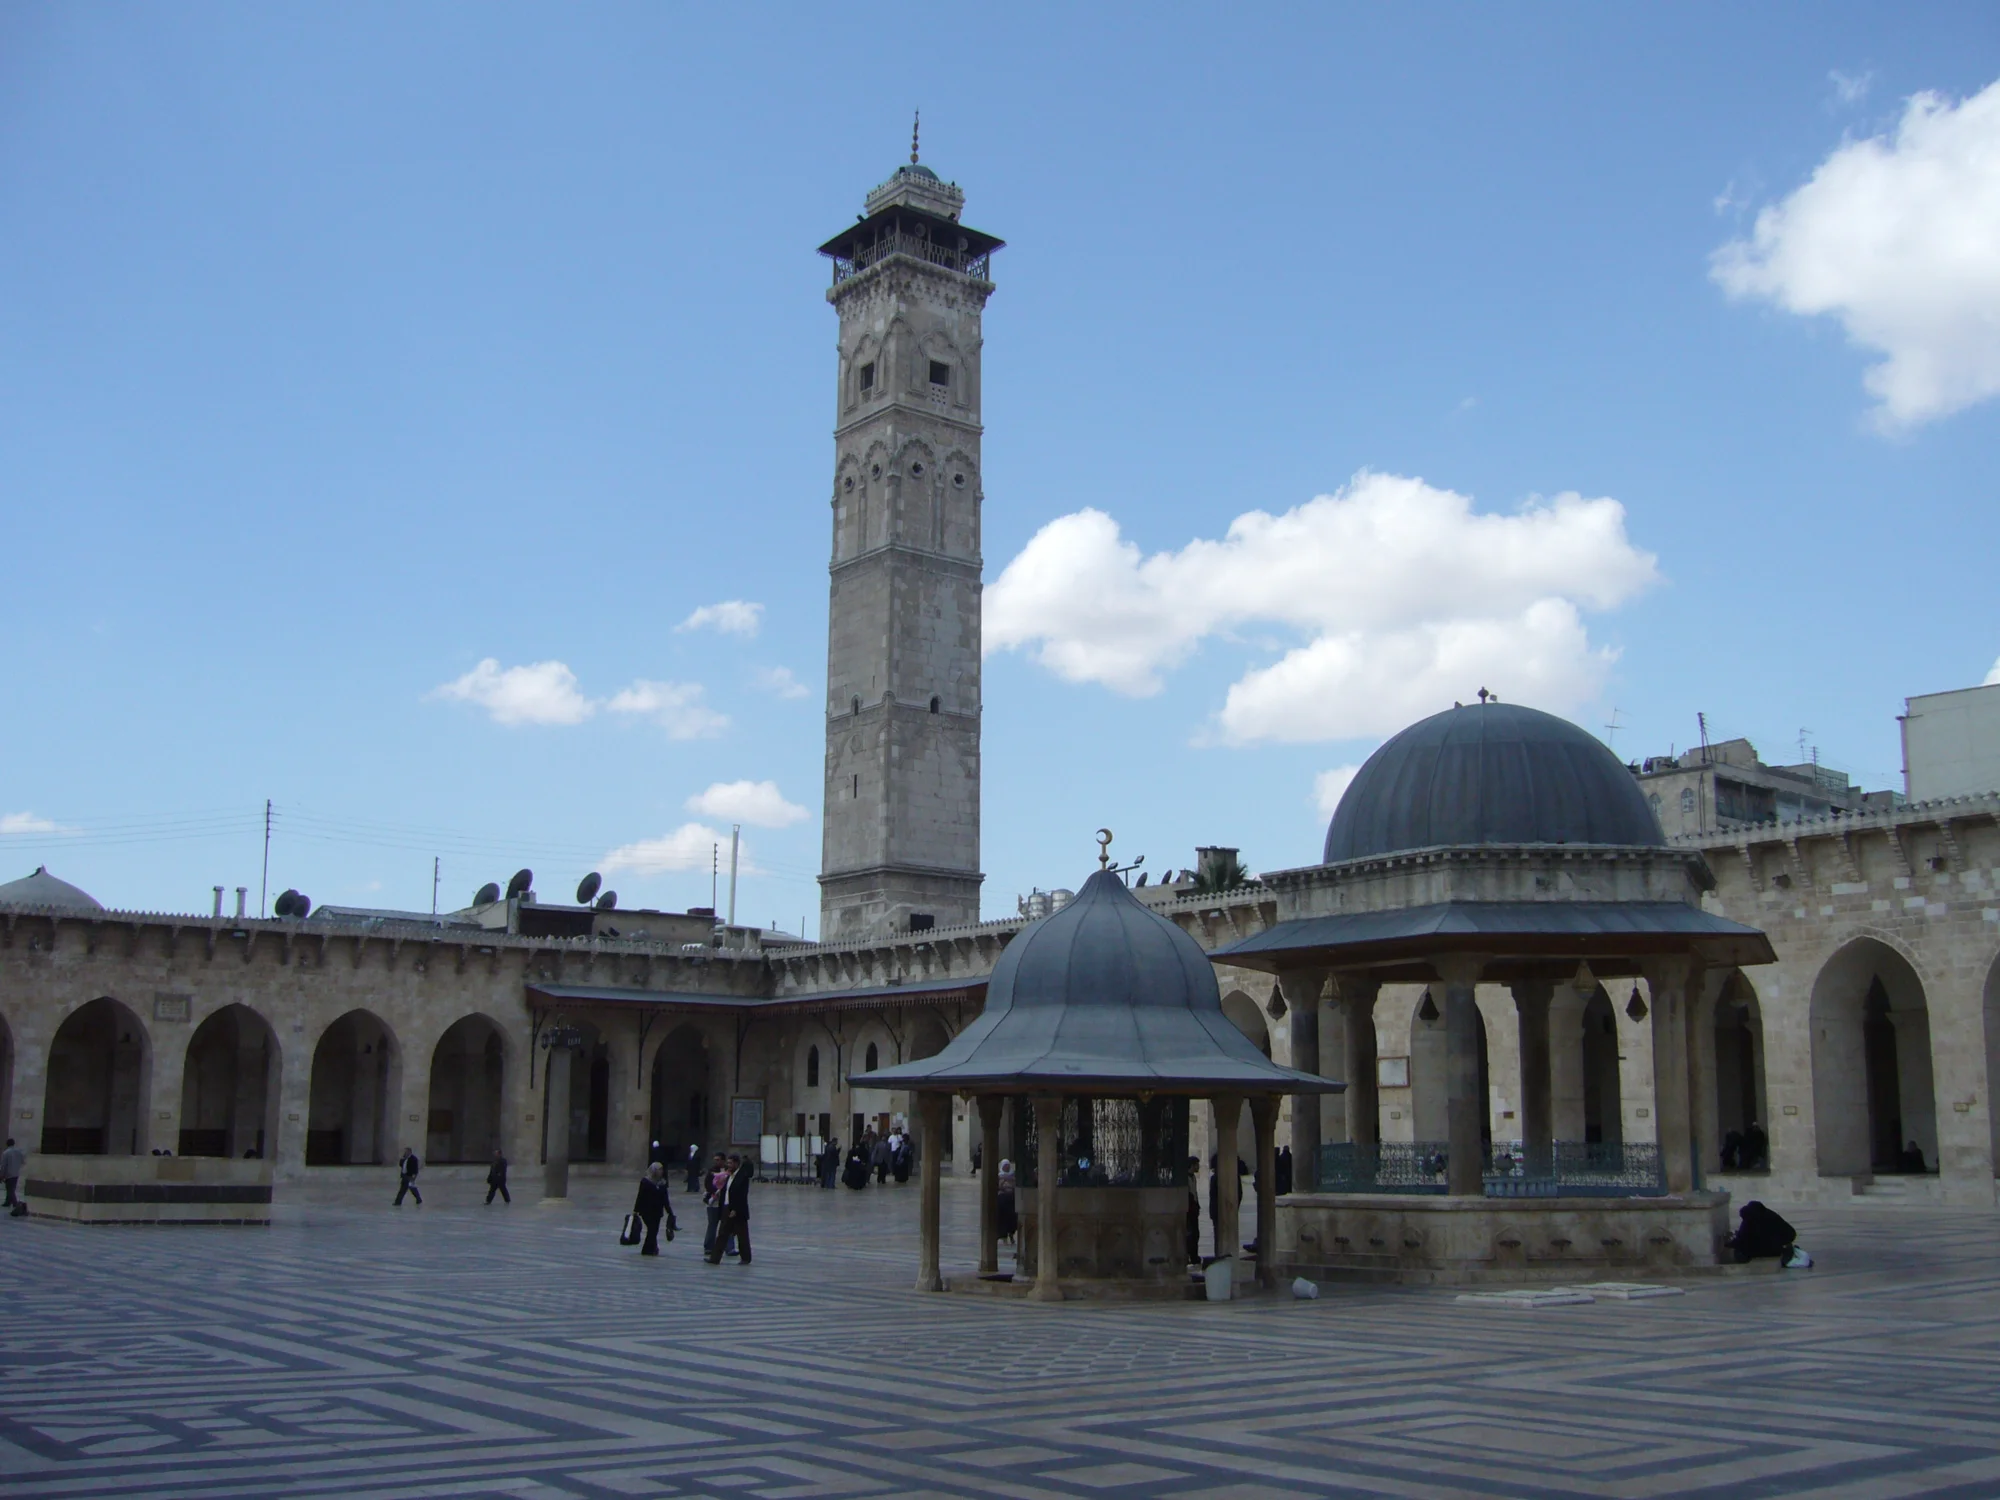 جامع حلب الكبير، مشهد للقسم الشمالي الغربي من الصحن